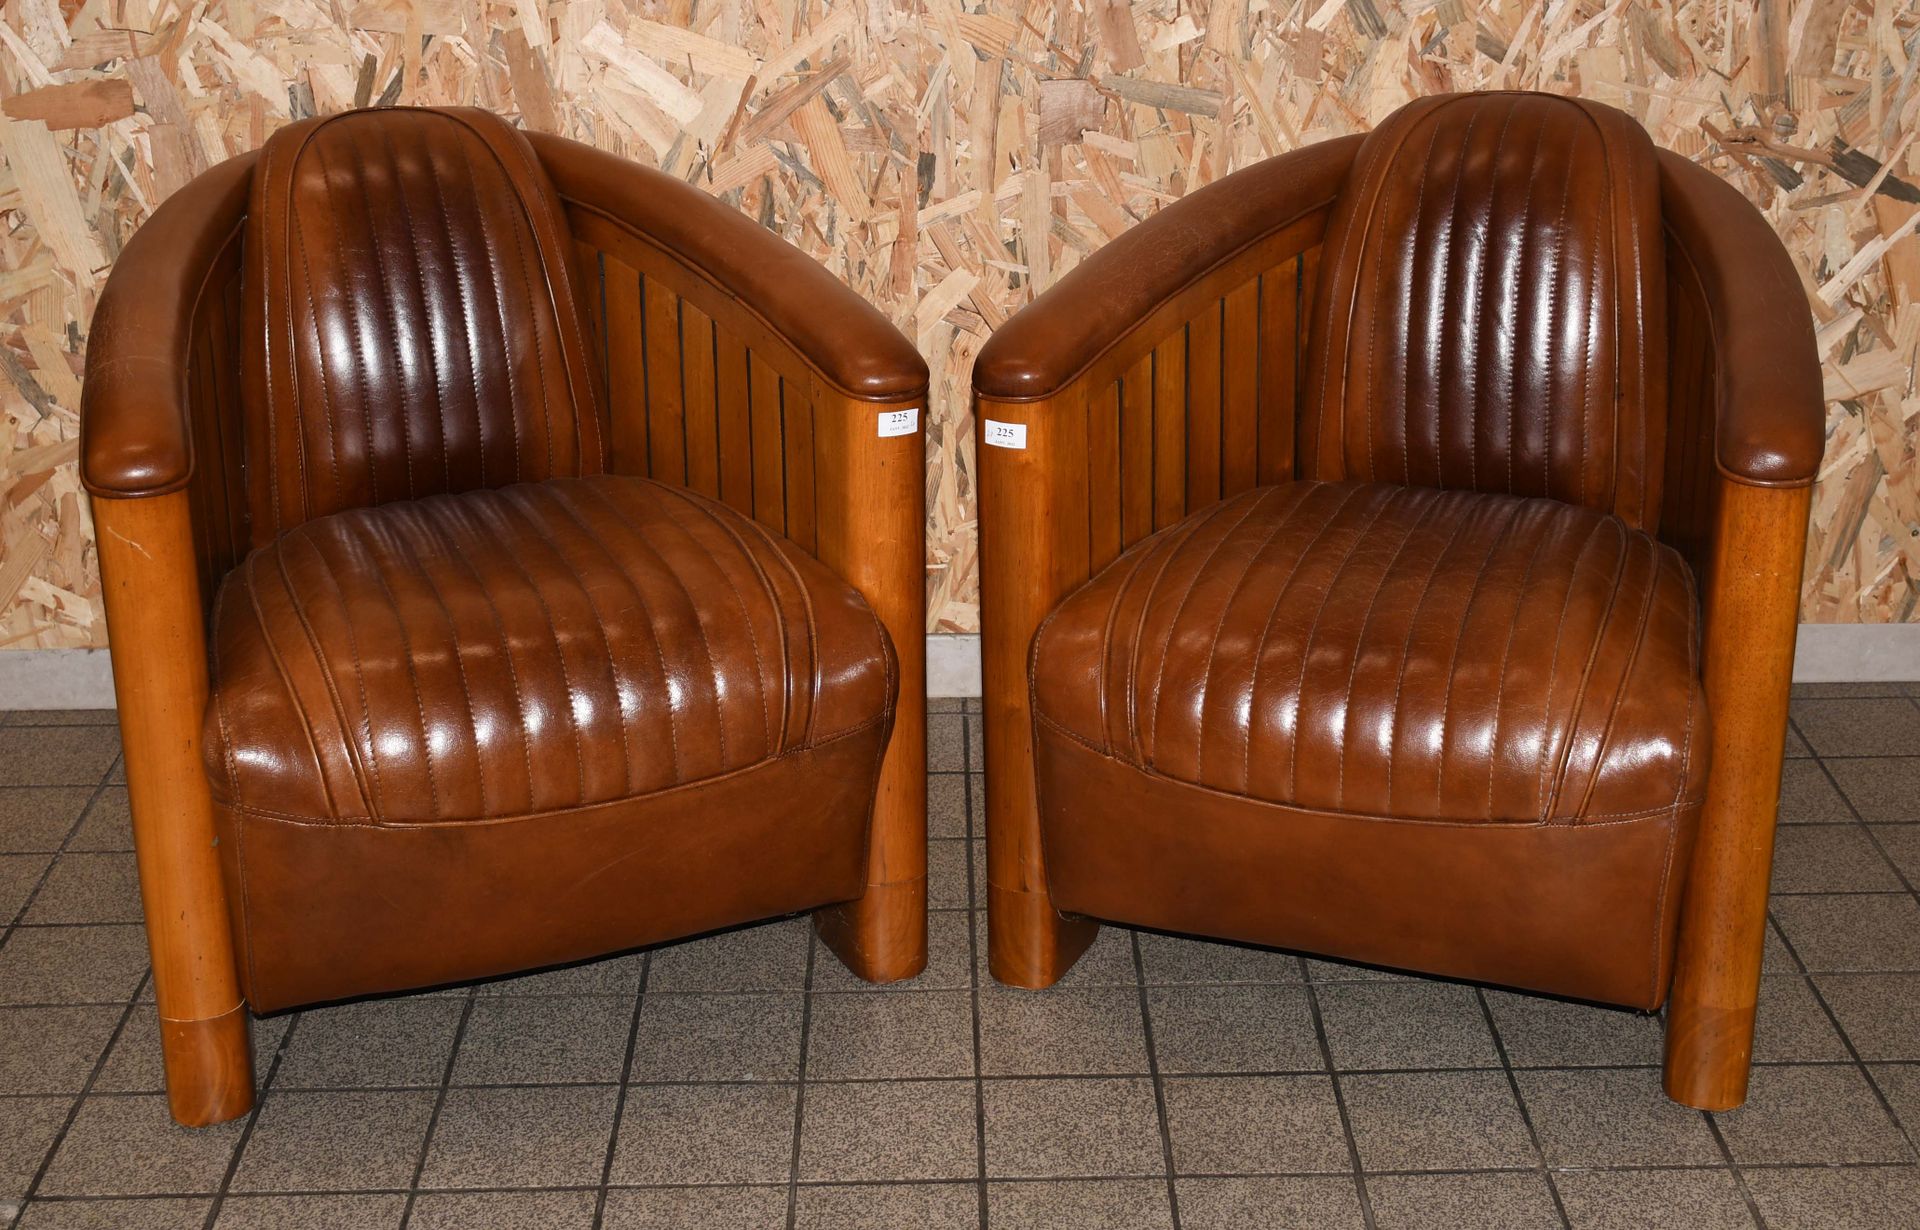 Null 设计者：罗恩-阿拉德

一对柚木和棕色皮革的 "飞行员 "俱乐部椅子。